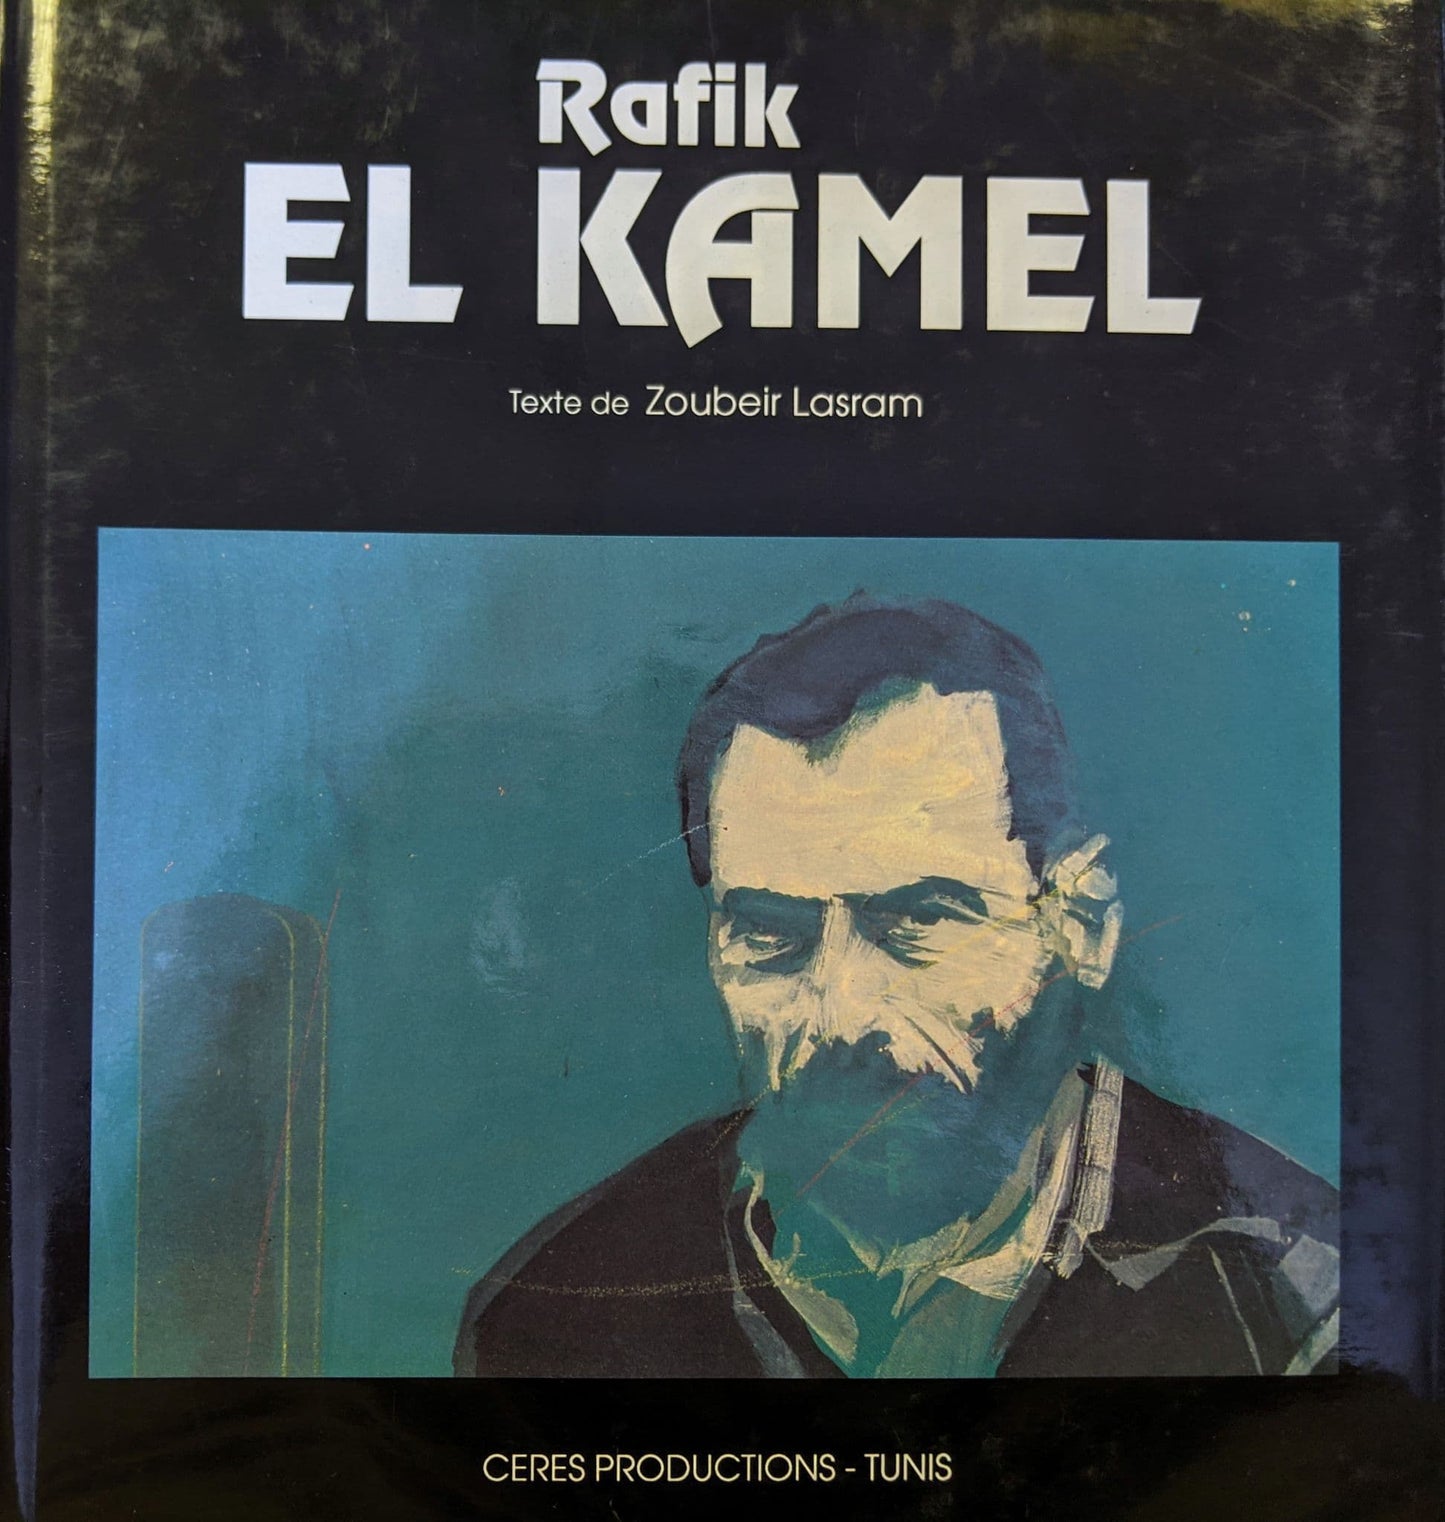 Rafik El Kamel texte de Zoubeir Lasram | رفيق الكامل - نص: زبير الاصرم